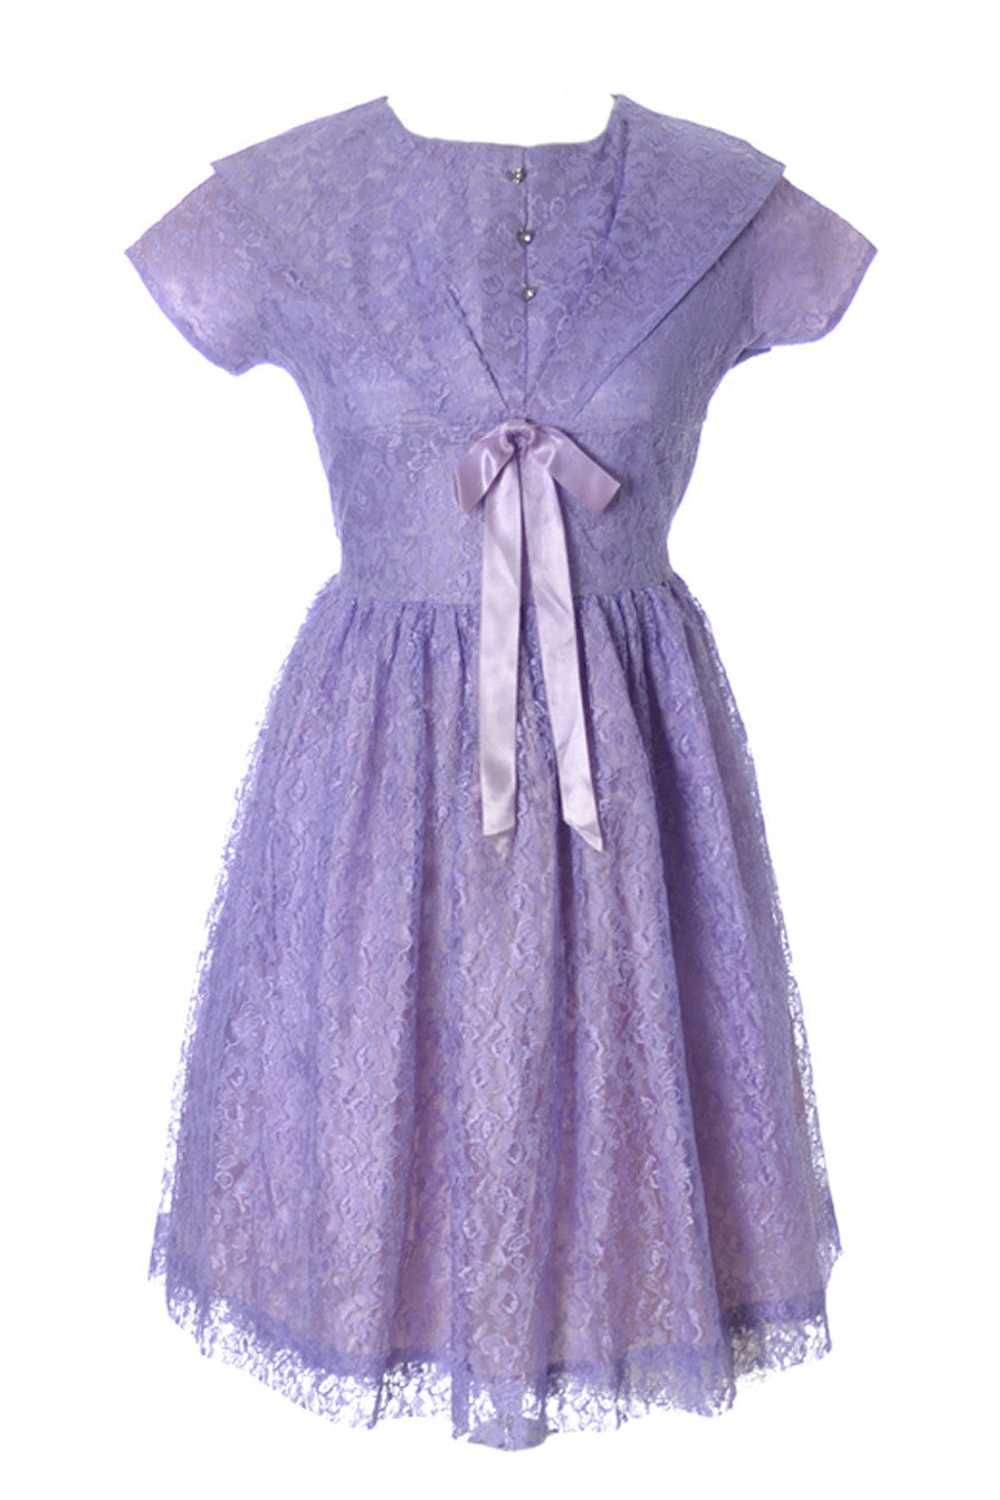 1950s Purple Lace Vintage Girls Party Dress - image 1